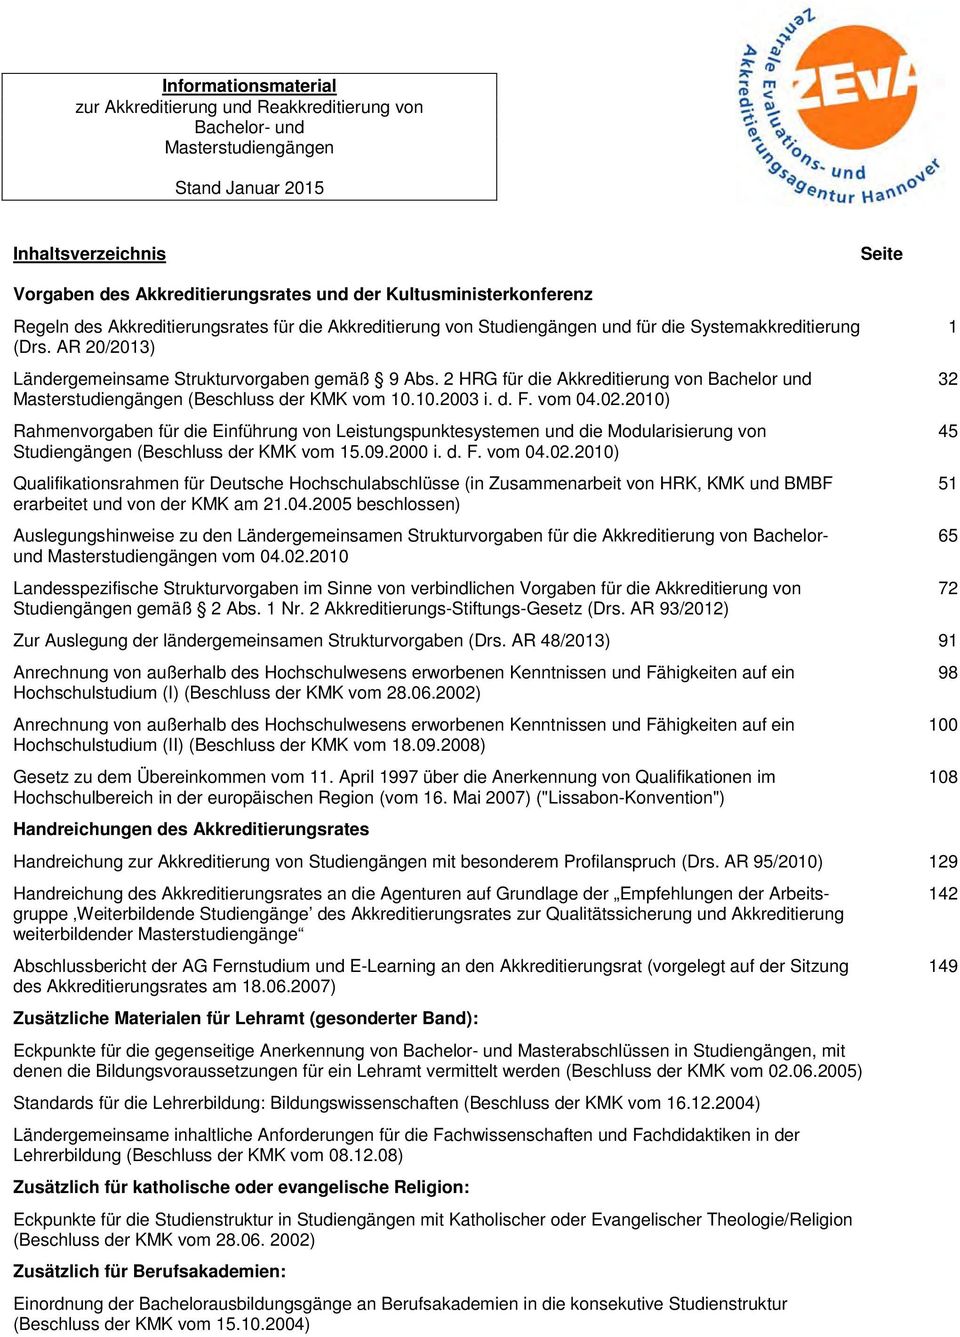 2 HRG für die Akkreditierung von Bachelor und 32 Masterstudiengängen (Beschluss der KMK vom 10.10.2003 i. d. F. vom 04.02.